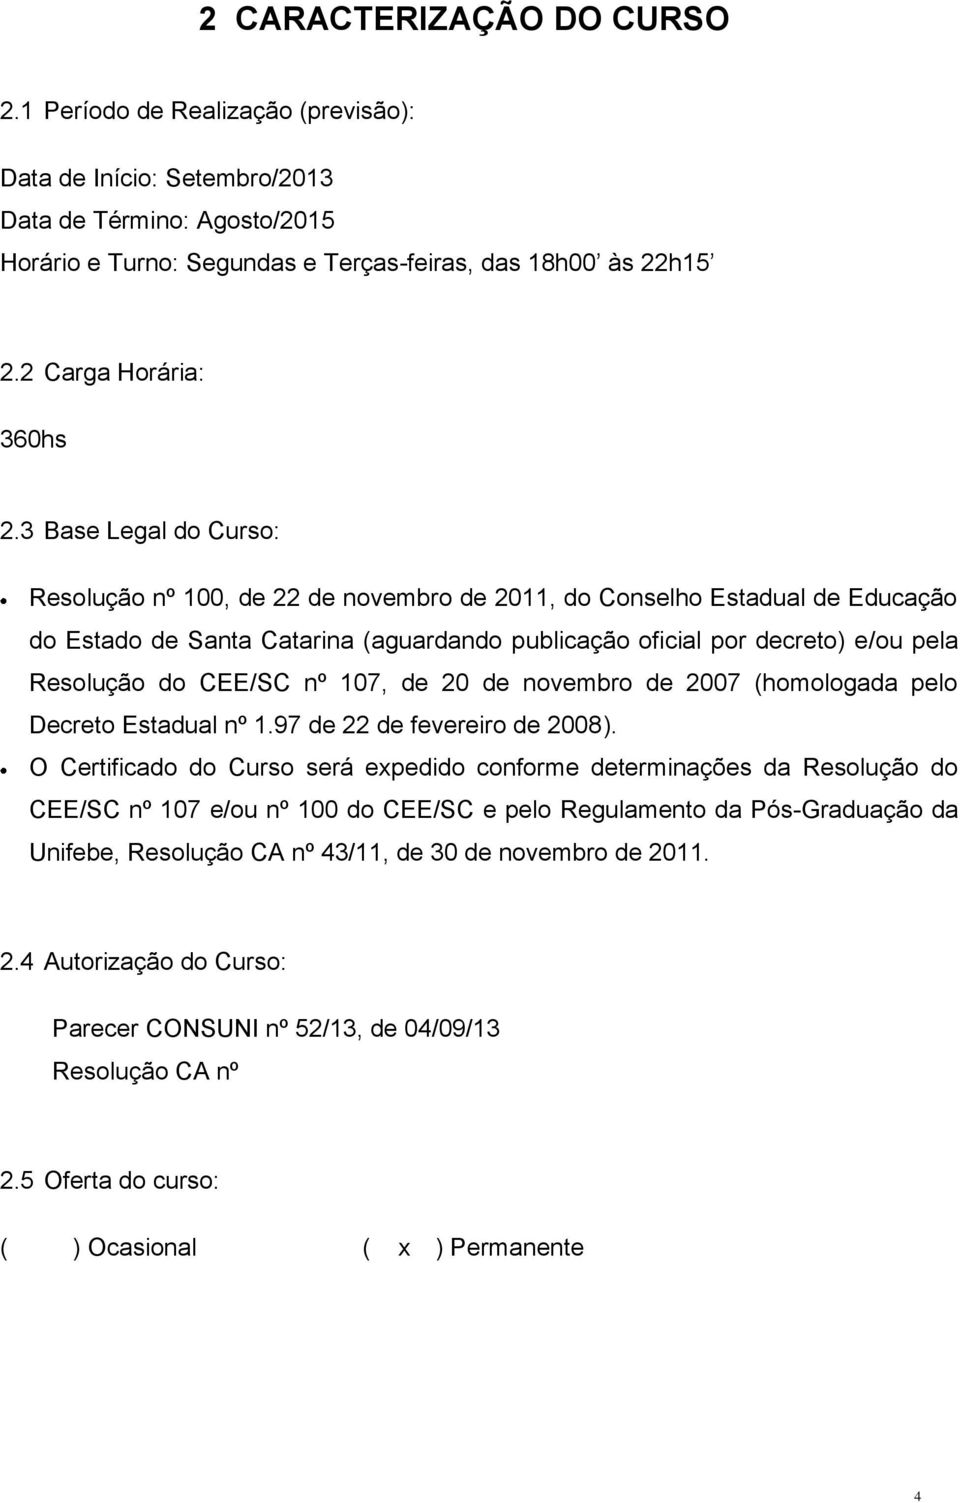 3 Base Legal do Curso: Resolução nº 100, de 22 de novembro de 2011, do Conselho Estadual de Educação do Estado de Santa Catarina (aguardando publicação oficial por decreto) e/ou pela Resolução do